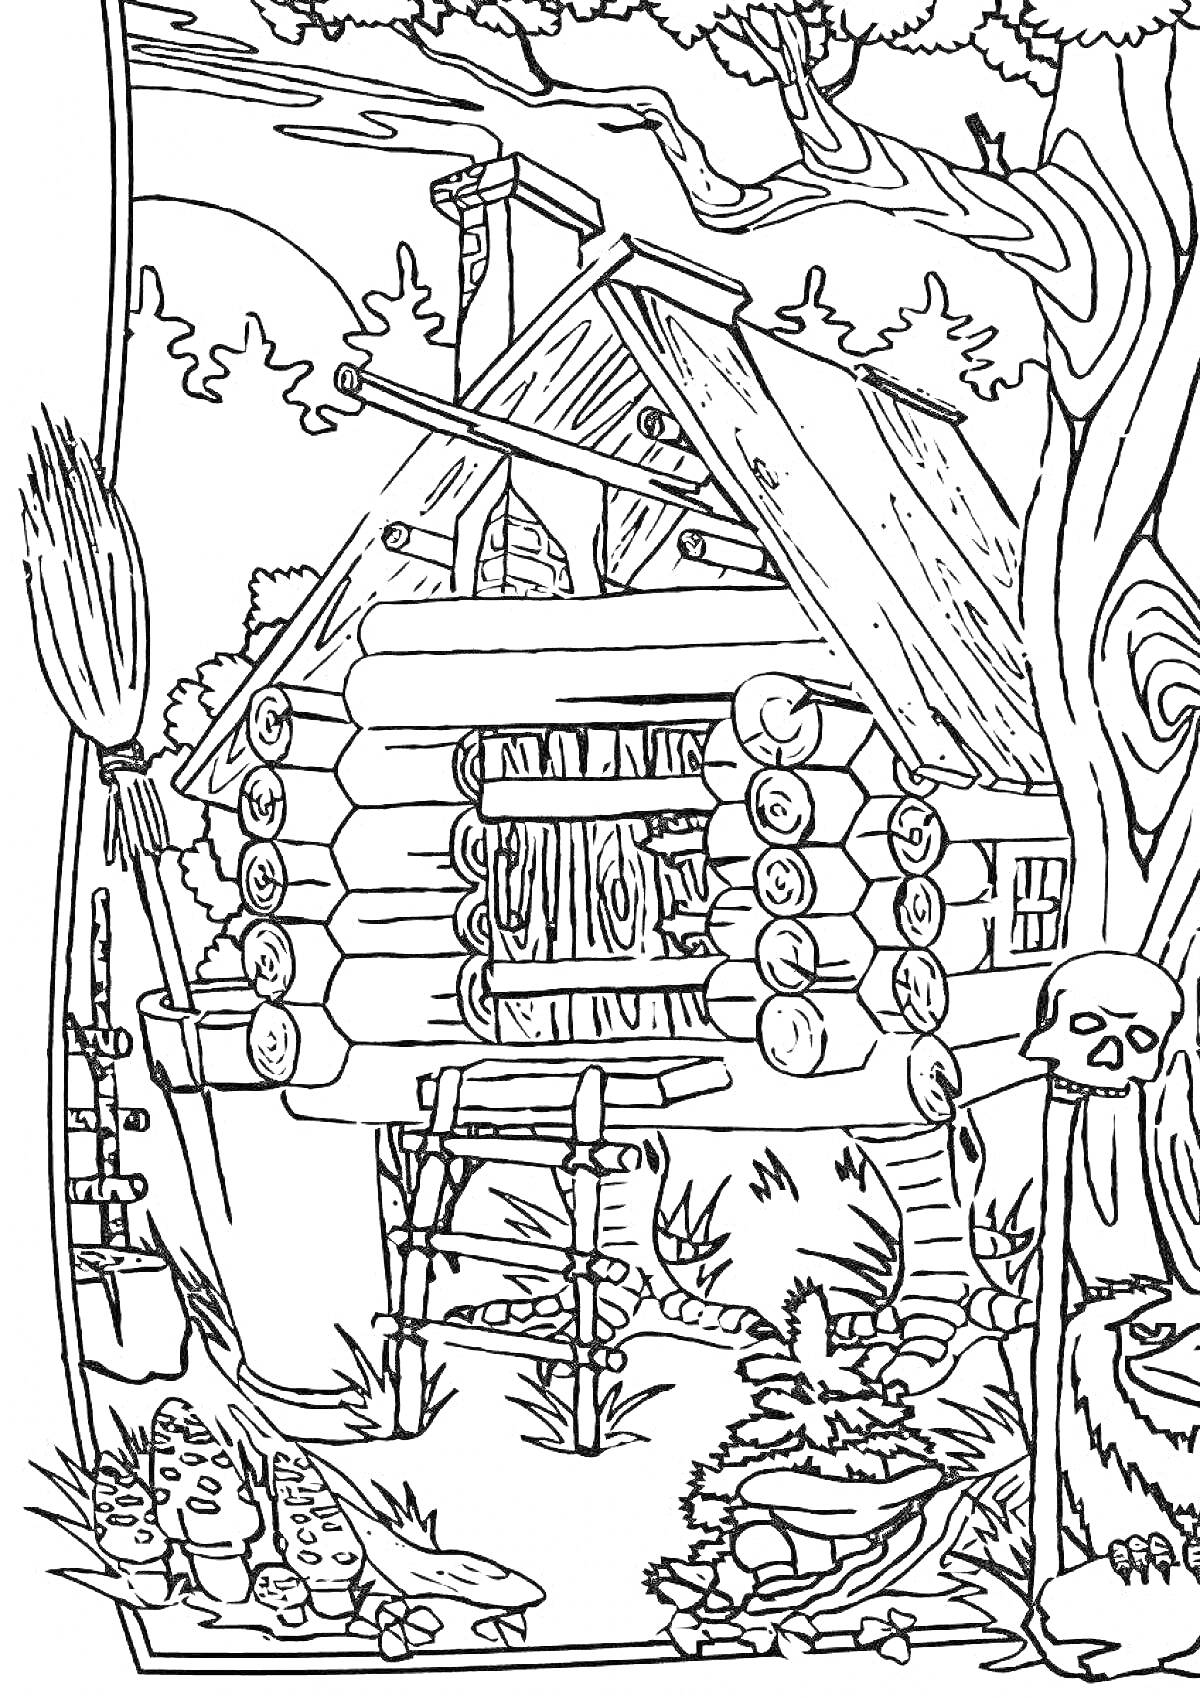 Раскраска Избушка на курьих ножках и Баба Яга в лесу с метлой, деревьями и скелетом